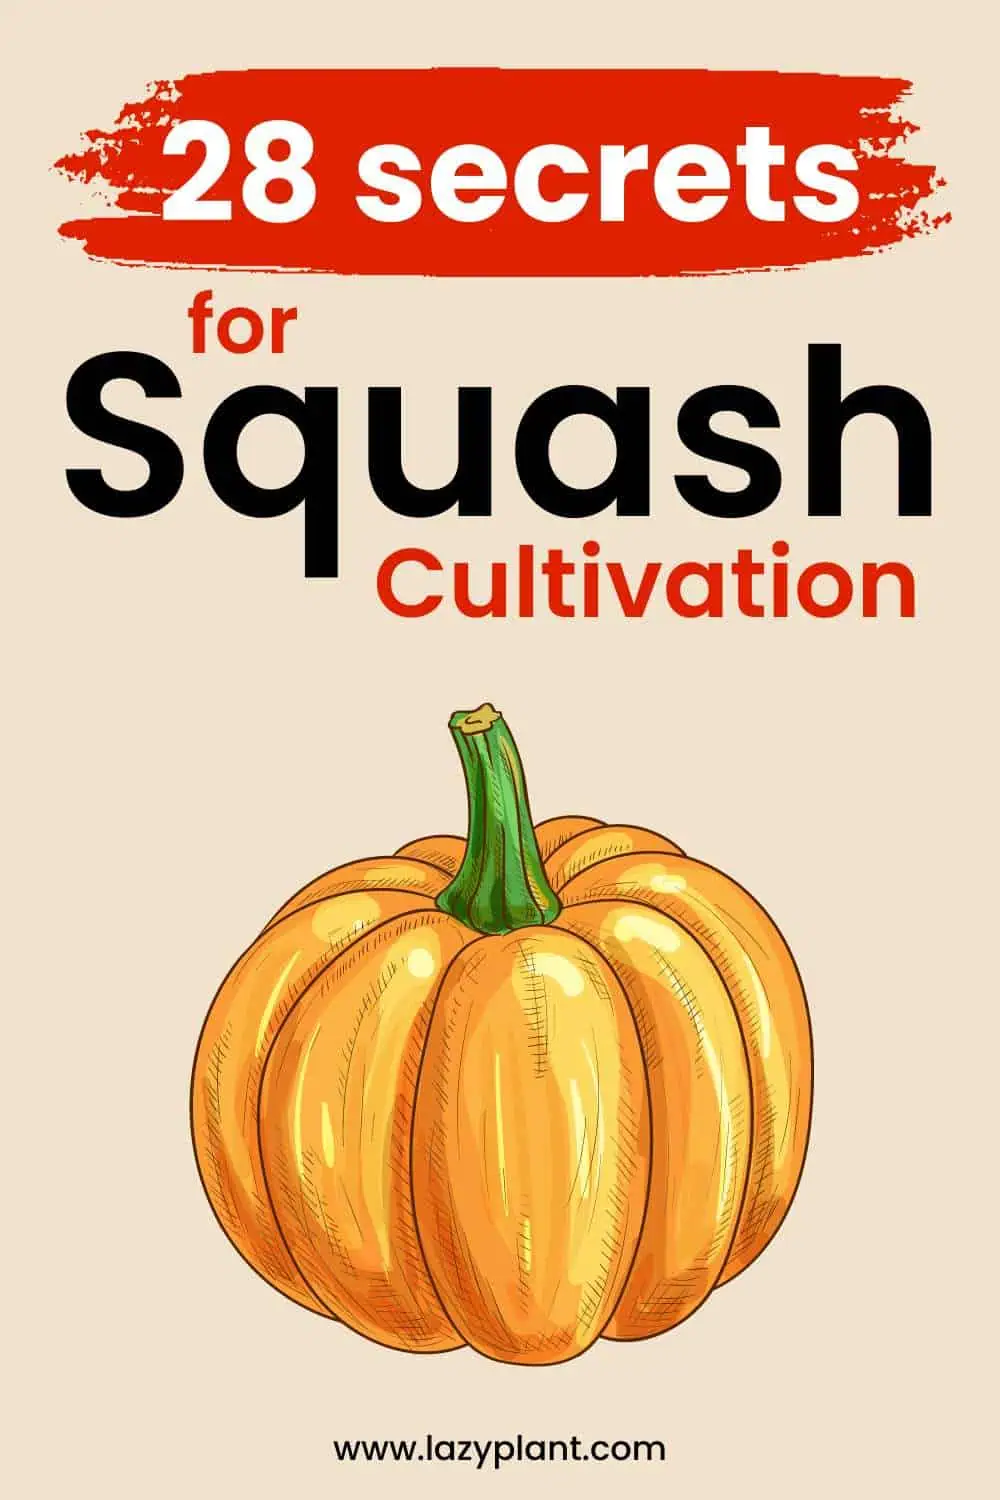 Secrets for Squash Cultivation